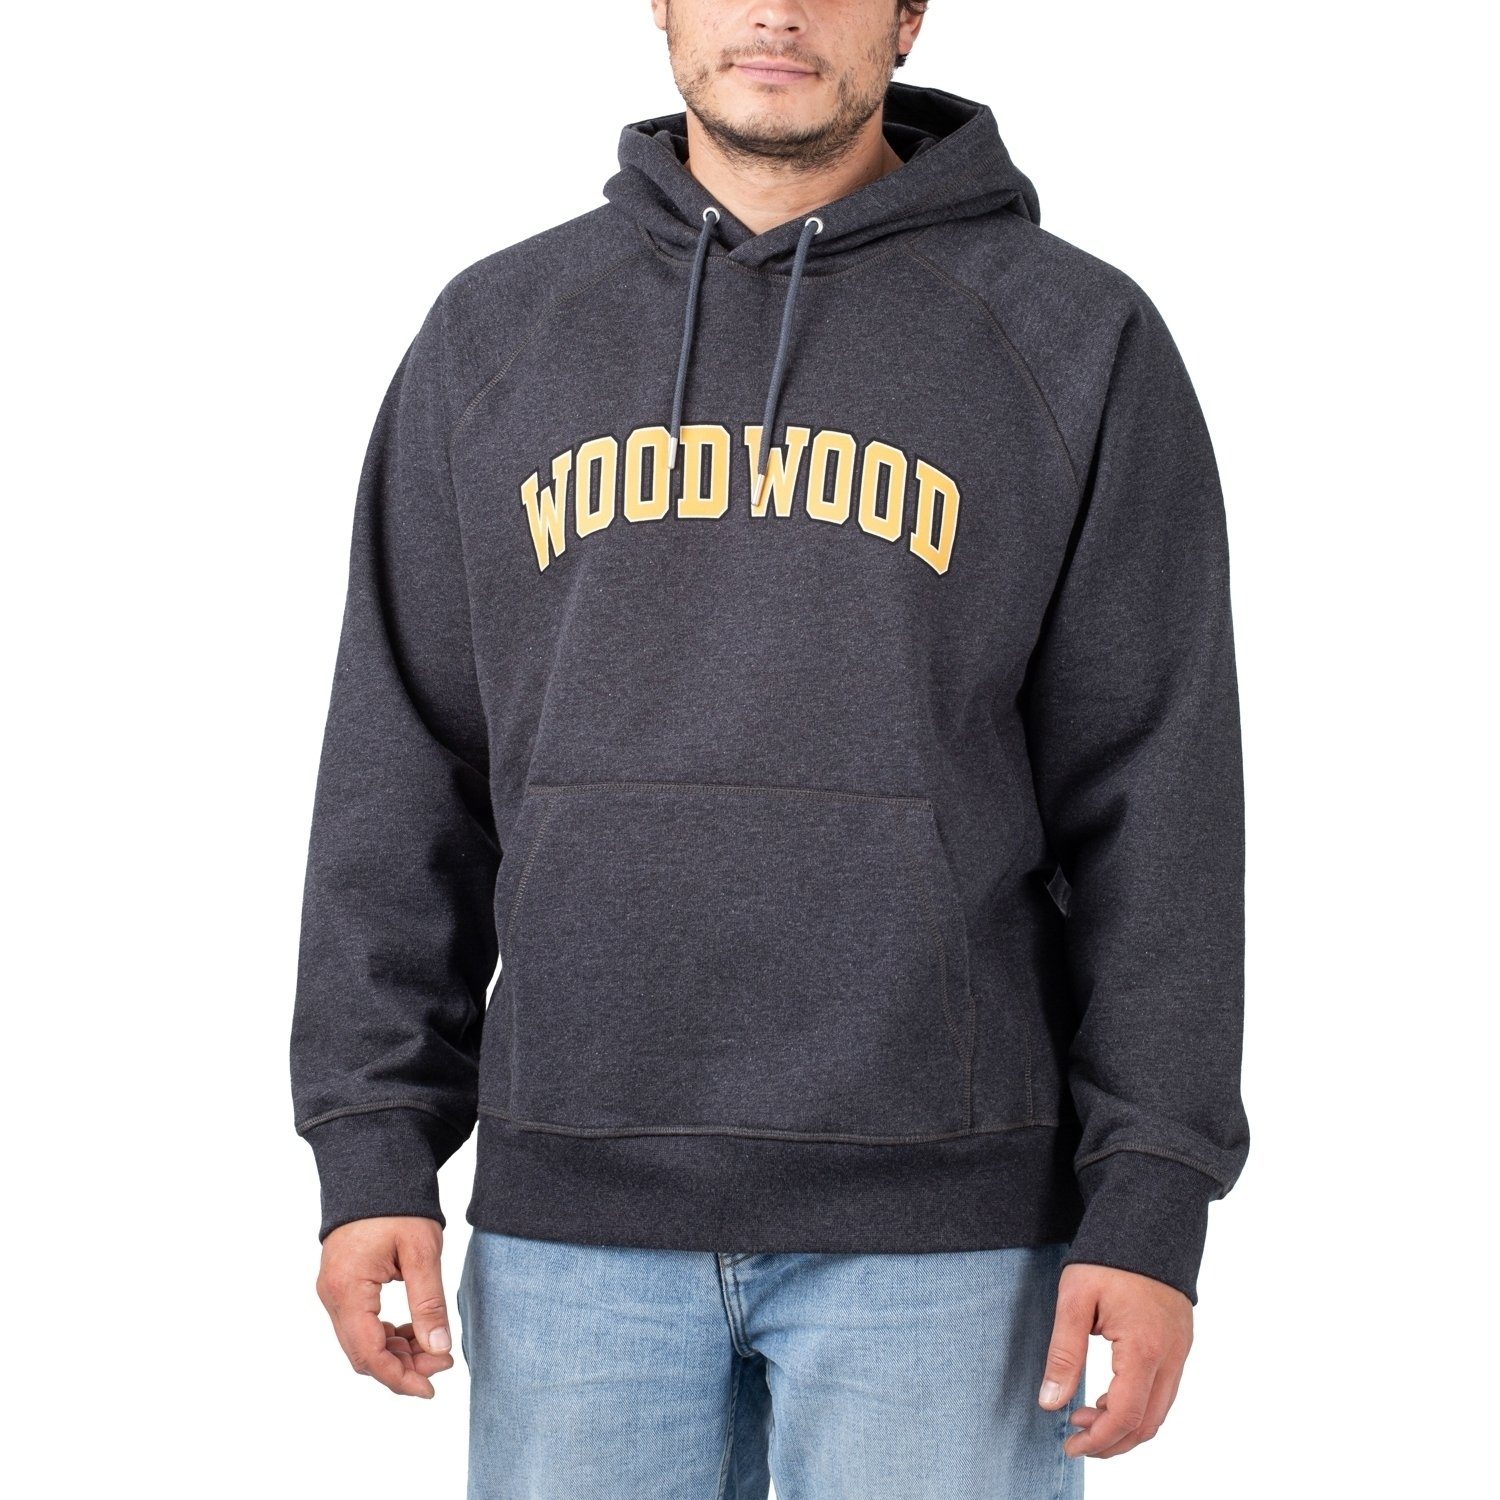 WOOD WOOD Sweater IVY Hoodie Fred Wood Wood